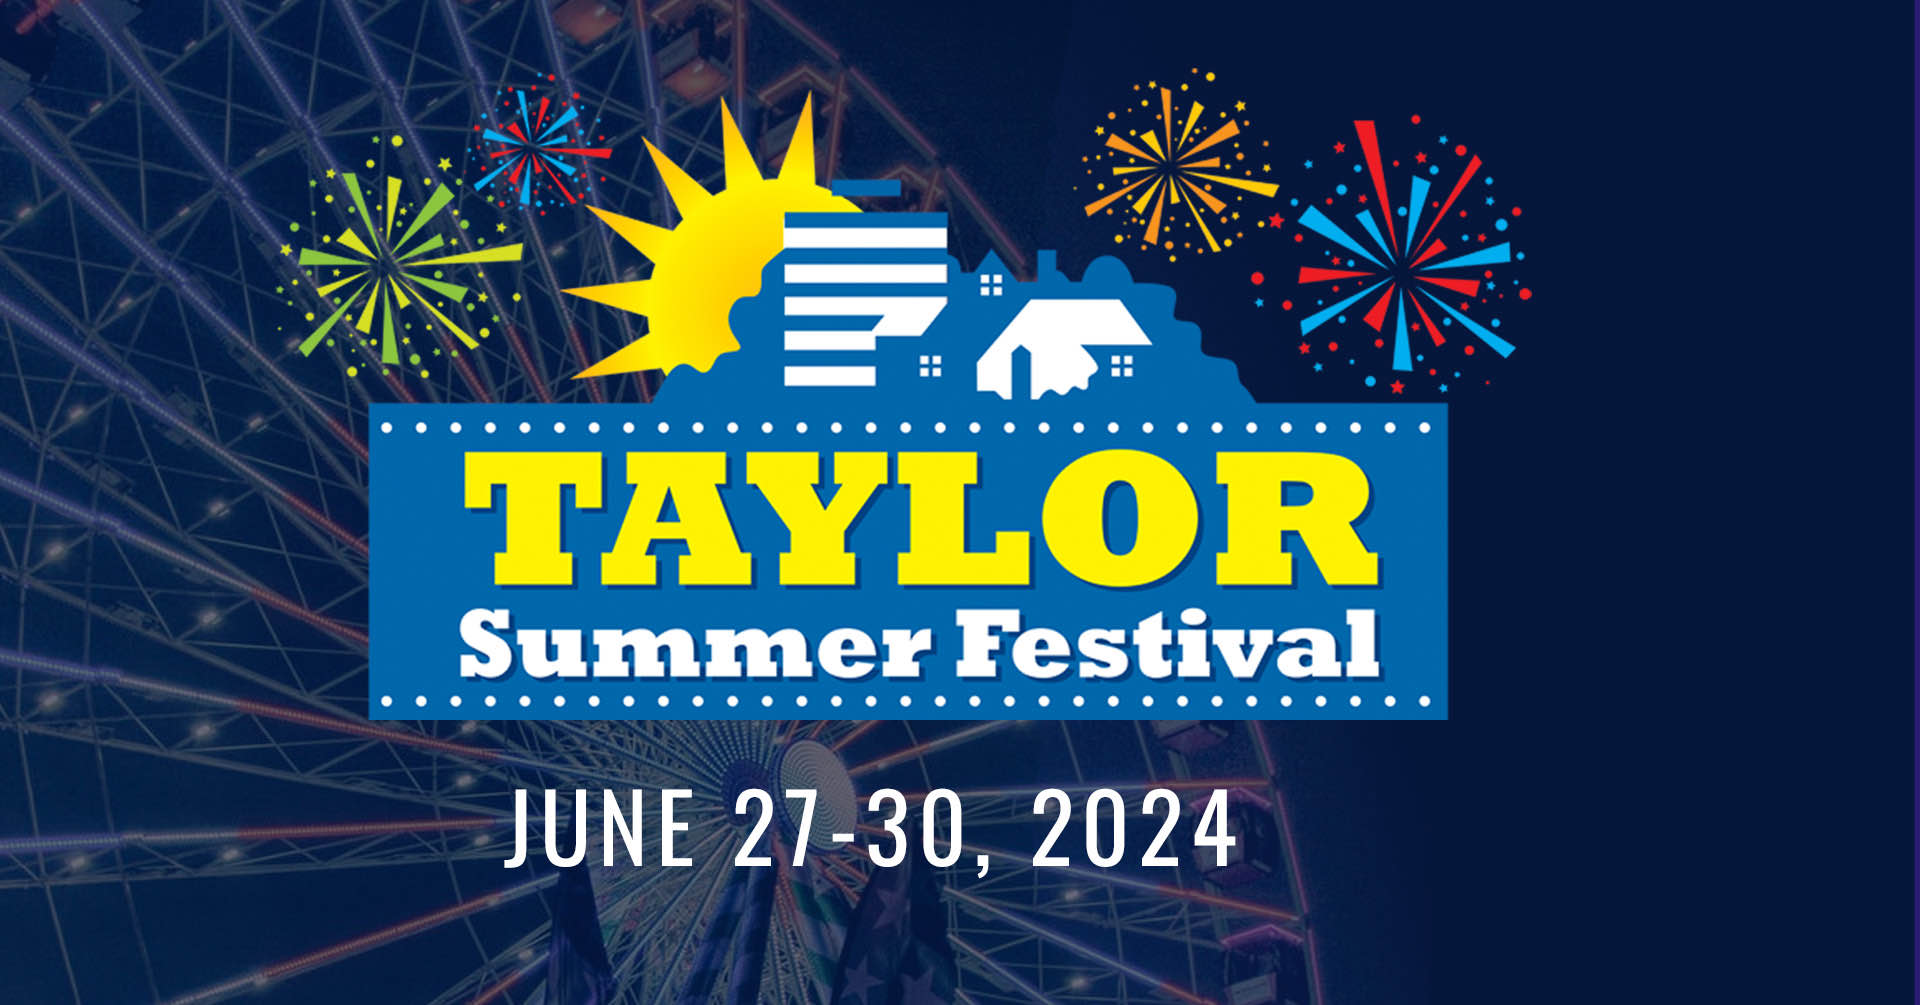 Taylor Summer Festival; June 27-30, 2024